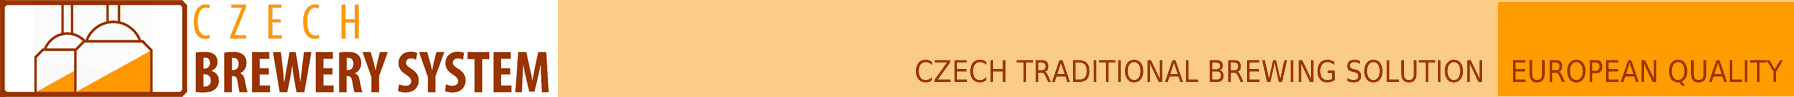 Logotip CBS-a